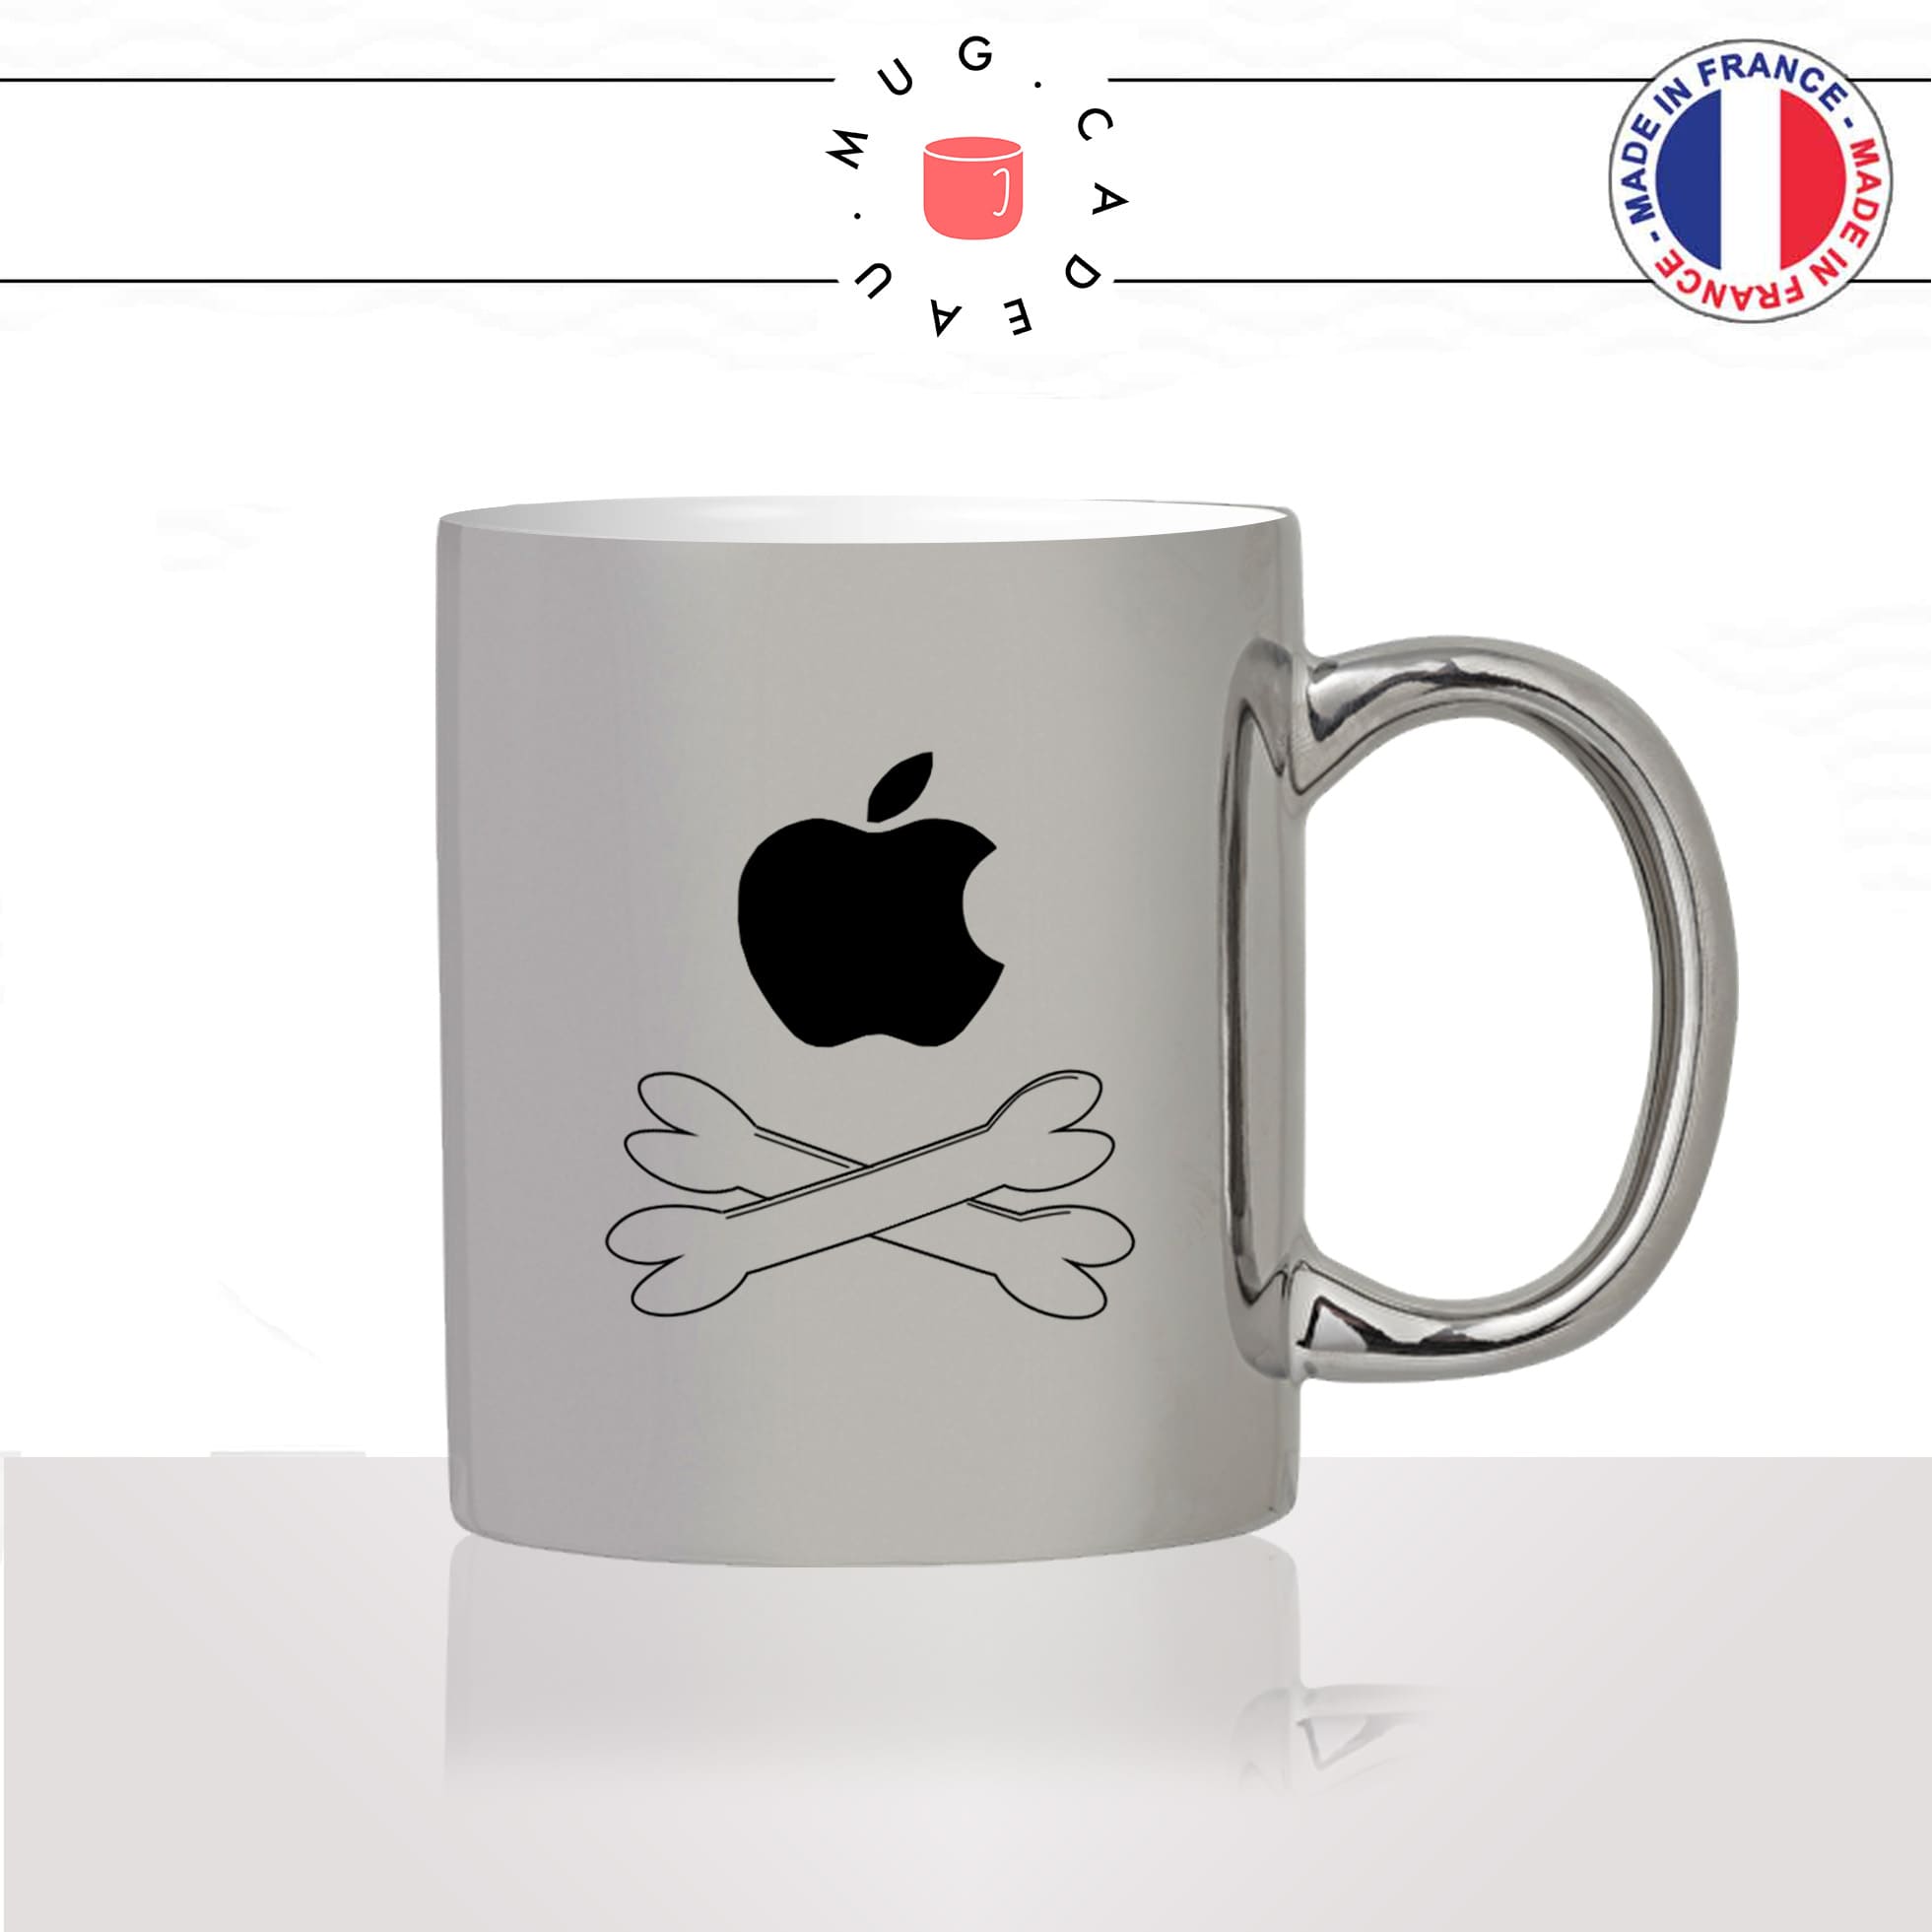 mug-tasse-argent-argenté-silver-geek-anti-apple-drapeau-pirate-mouton-societe-de-gauche-drole-original-idée-cadeau-fun-cool-café-thé2